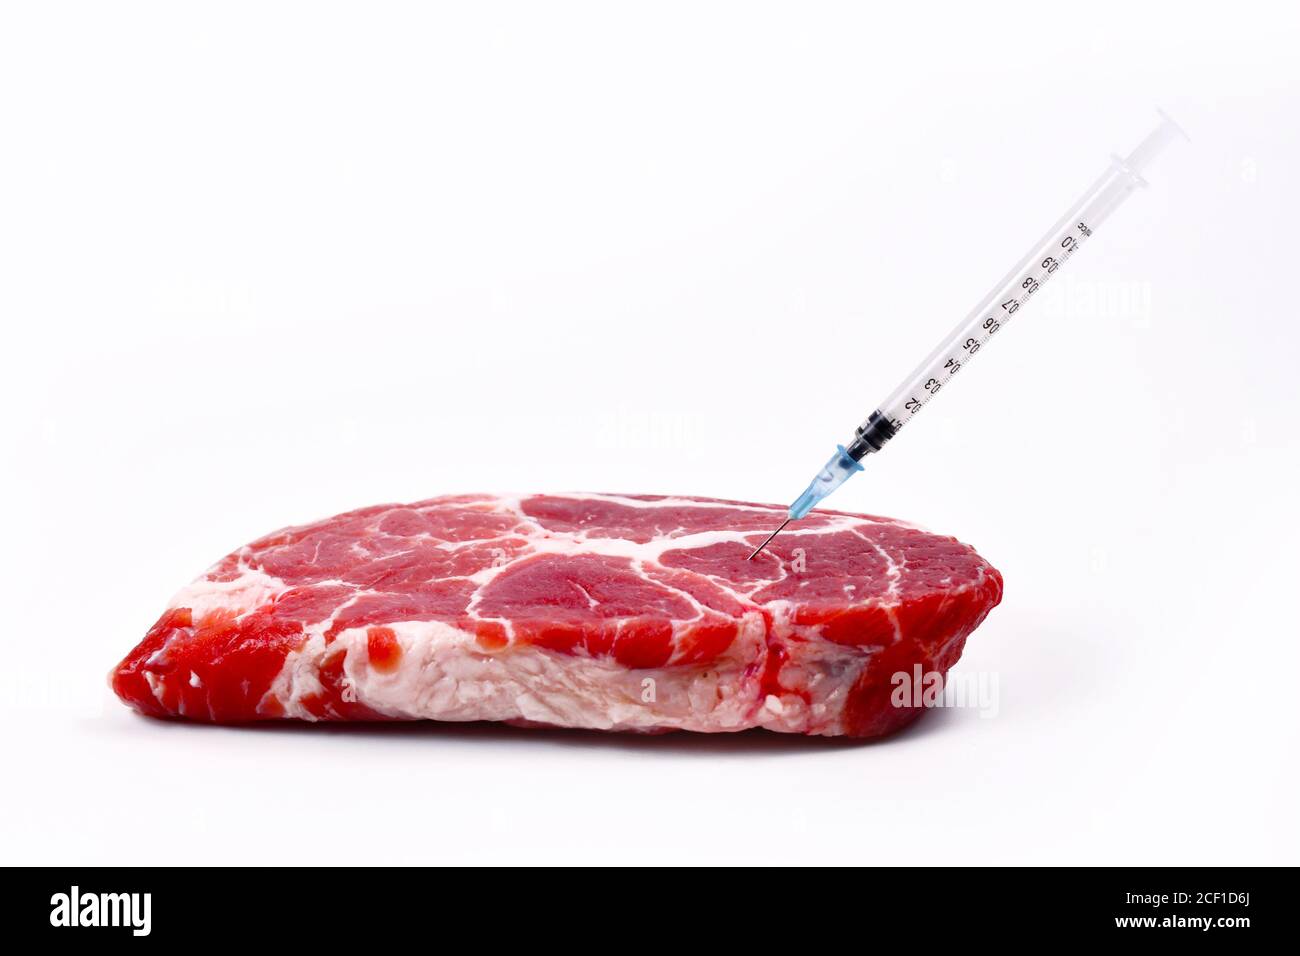 Konzept für gentechnisch veränderte Tiere oder Antibiotika und Arzneimittelrückstände In Lebensmitteln mit rohem rotem Fleisch mit eingespritzter Spritze Stockfoto